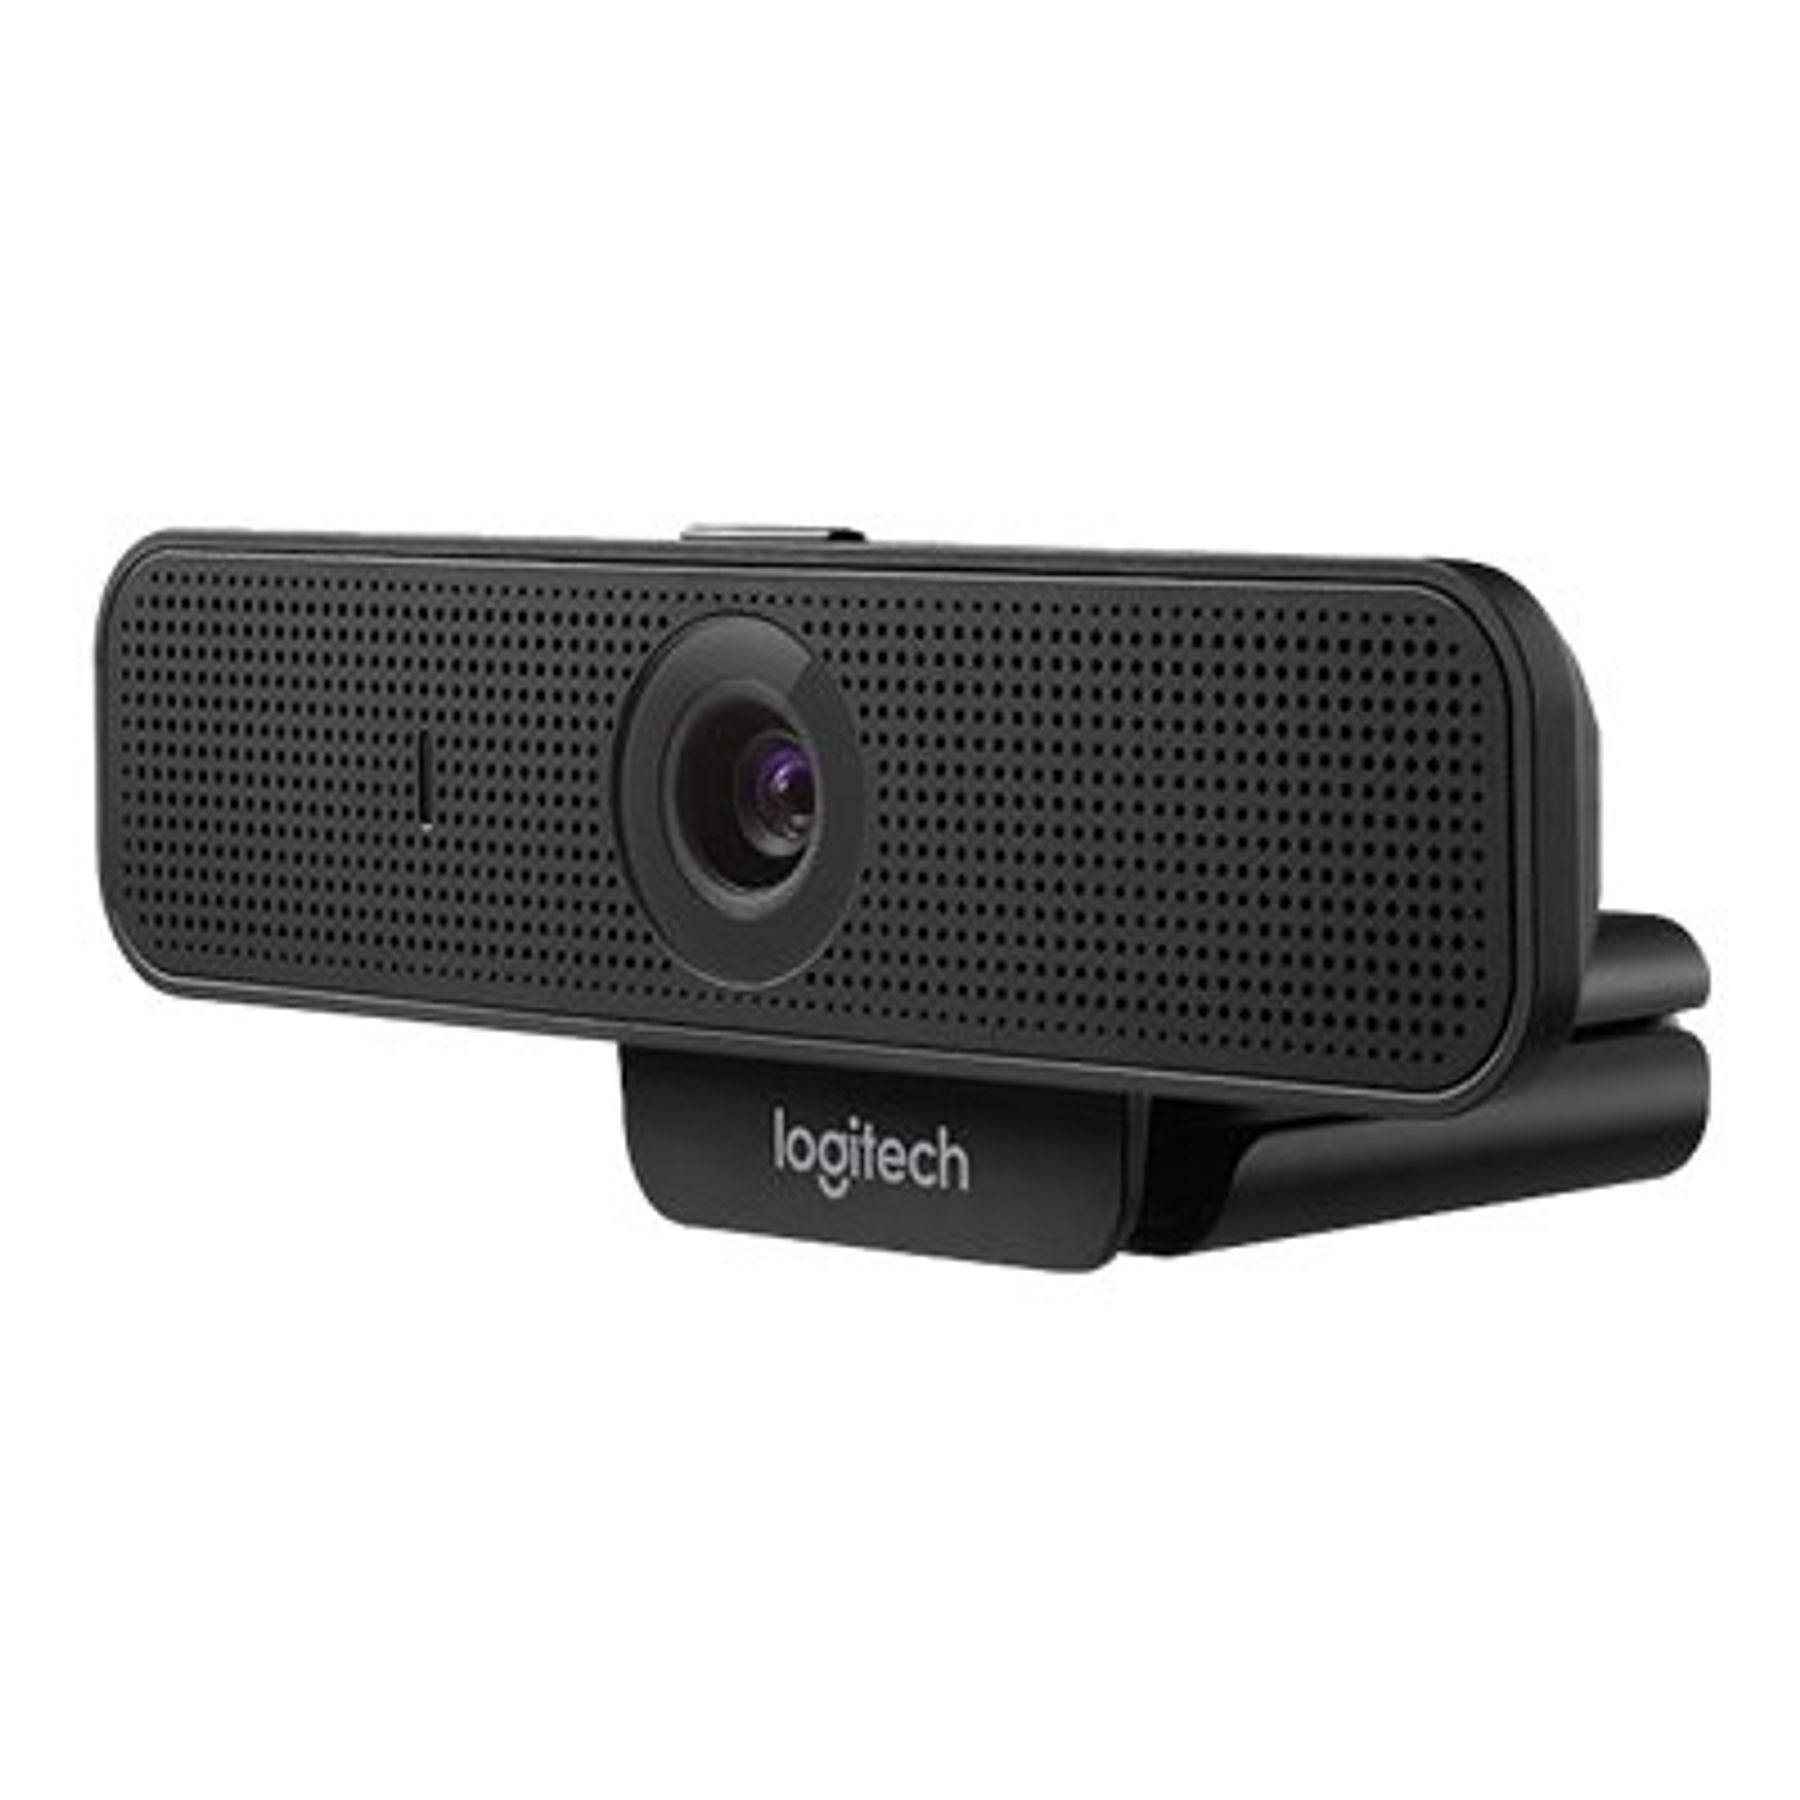 Logitech Webcam C925e 